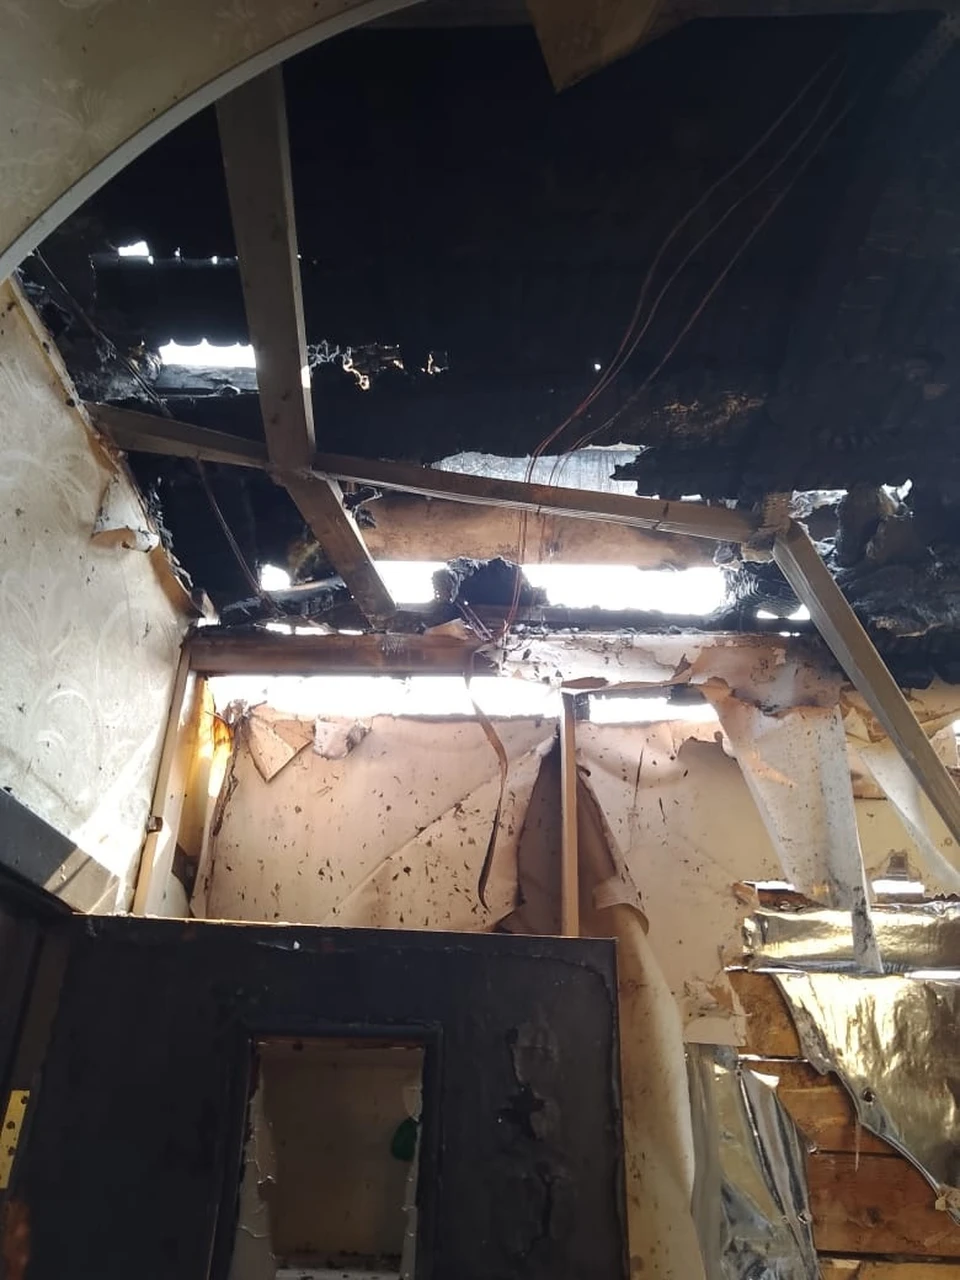 Так выглядит одна из квартир в доме, где произошел пожар. Фото: предоставлено «КП-Томск» героем публикации